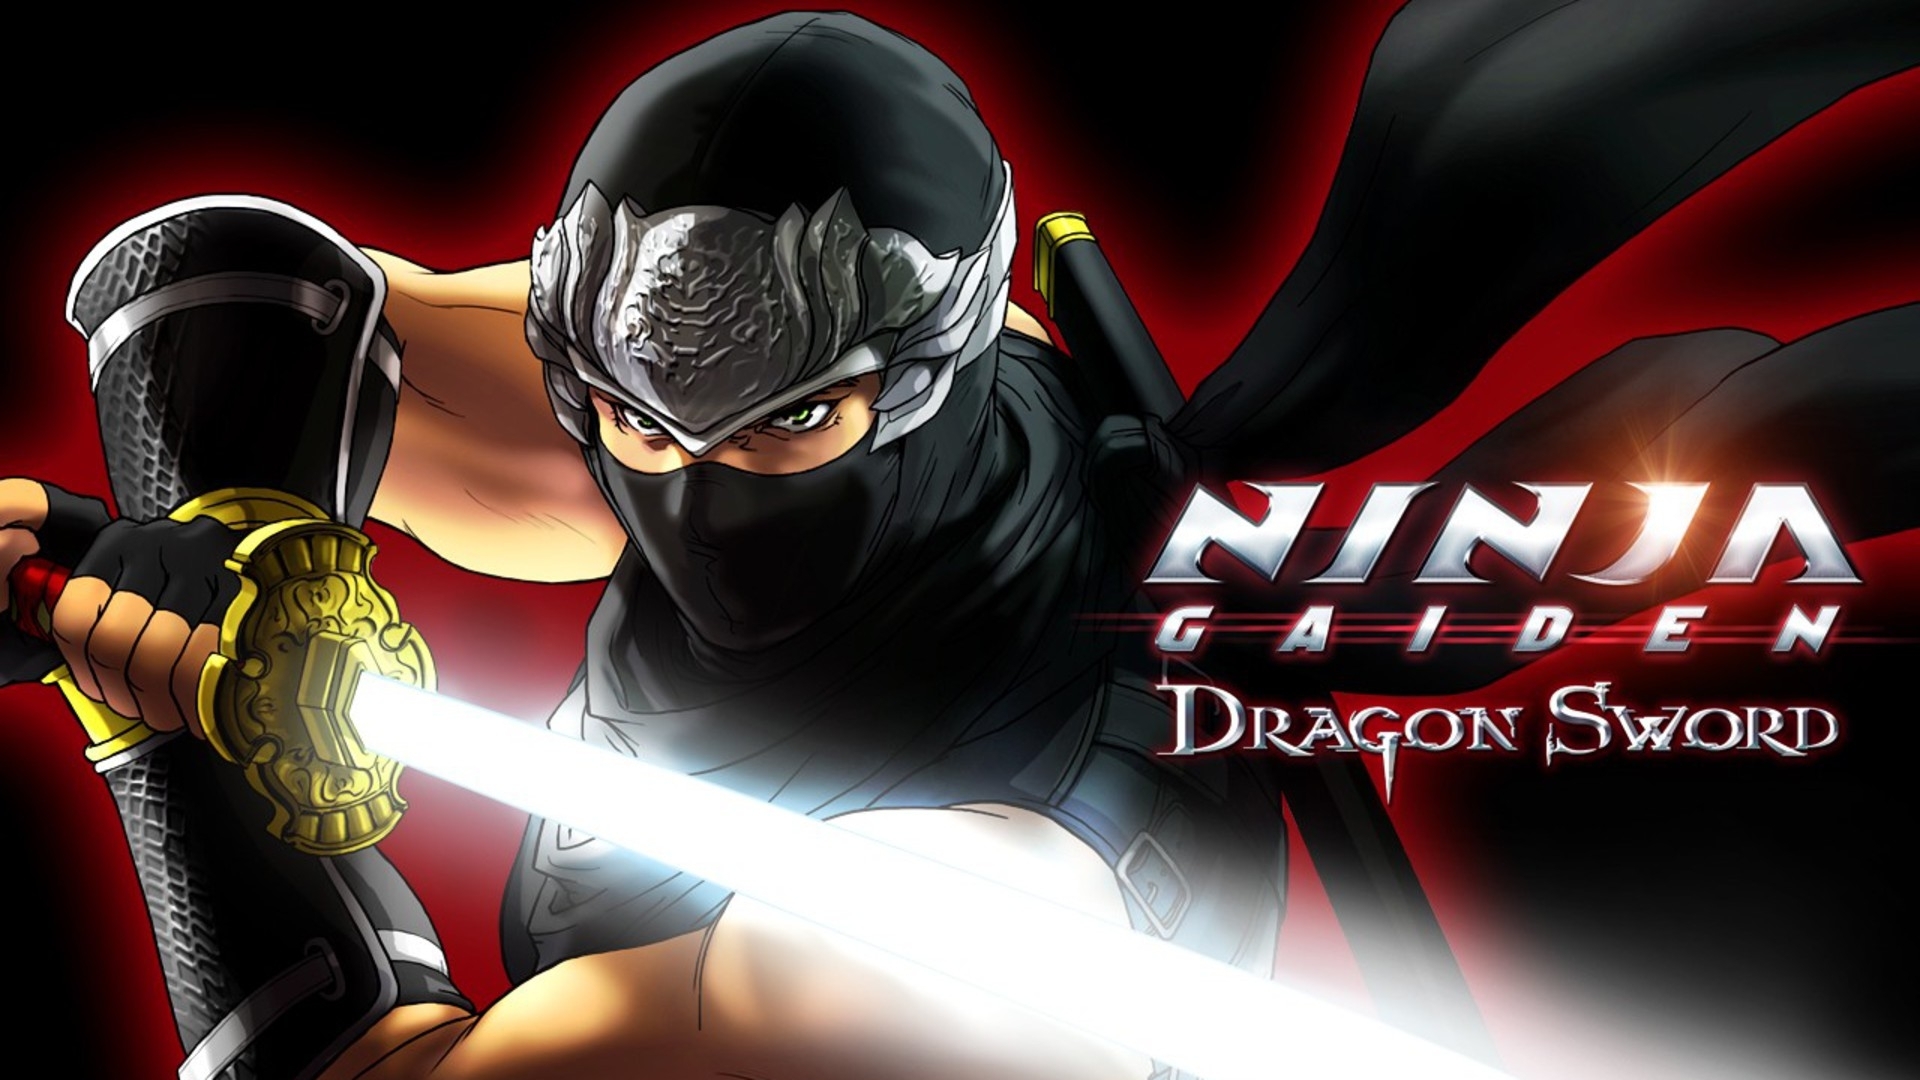 ninja aiden dragon sword, warrior, sword Wallpaper, HD Games 4K Wallpapers,  Images, Photos and Background - Wallpapers Den